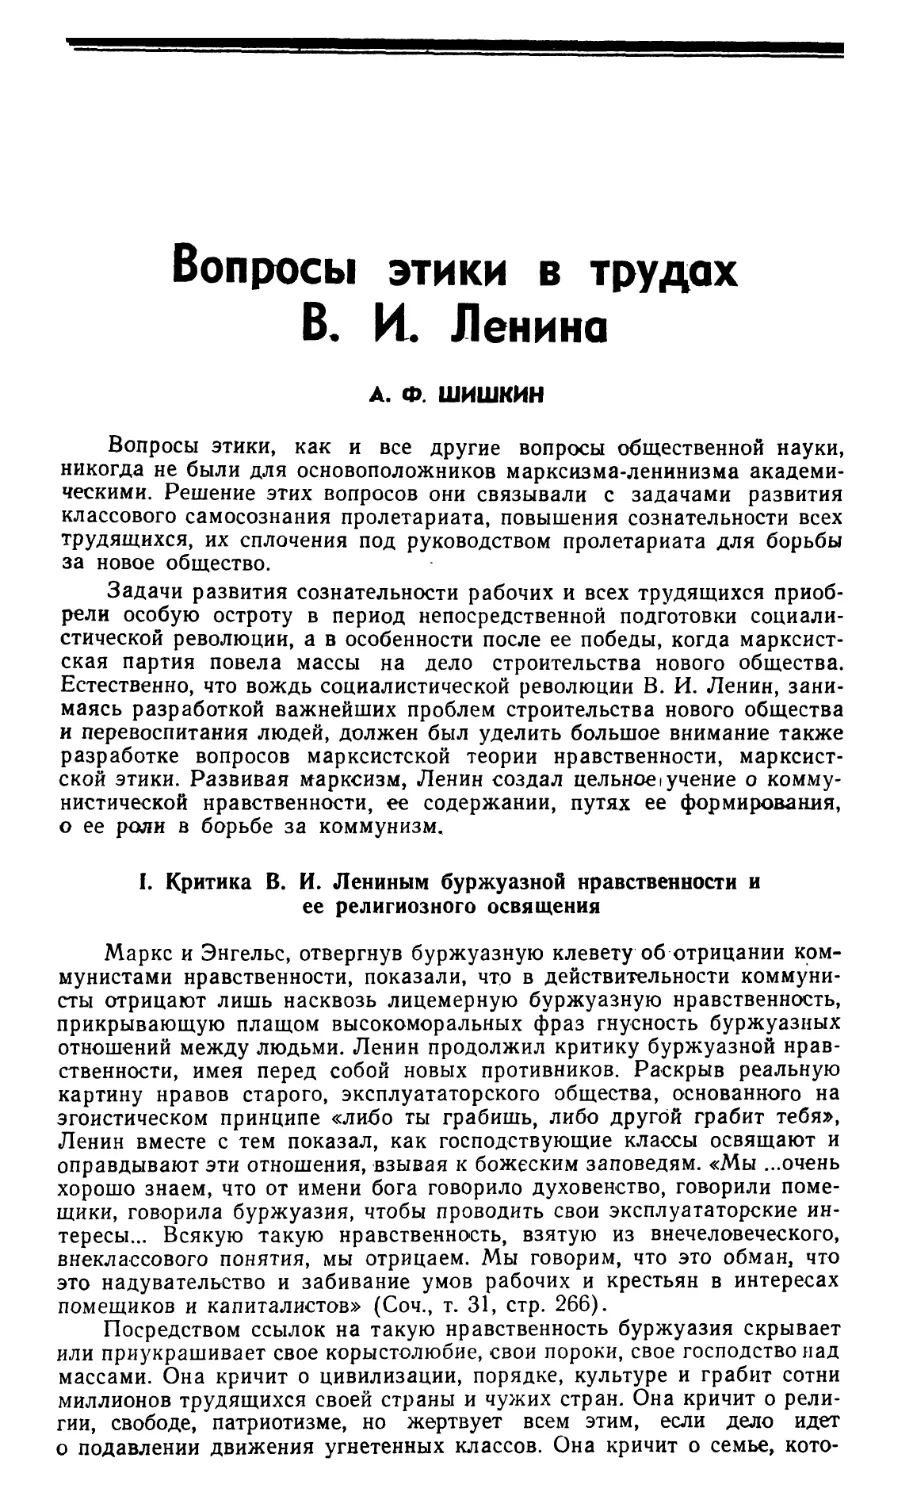 A.Ф. Шишкин – Вопросы этики в трудах В.И. Ленина